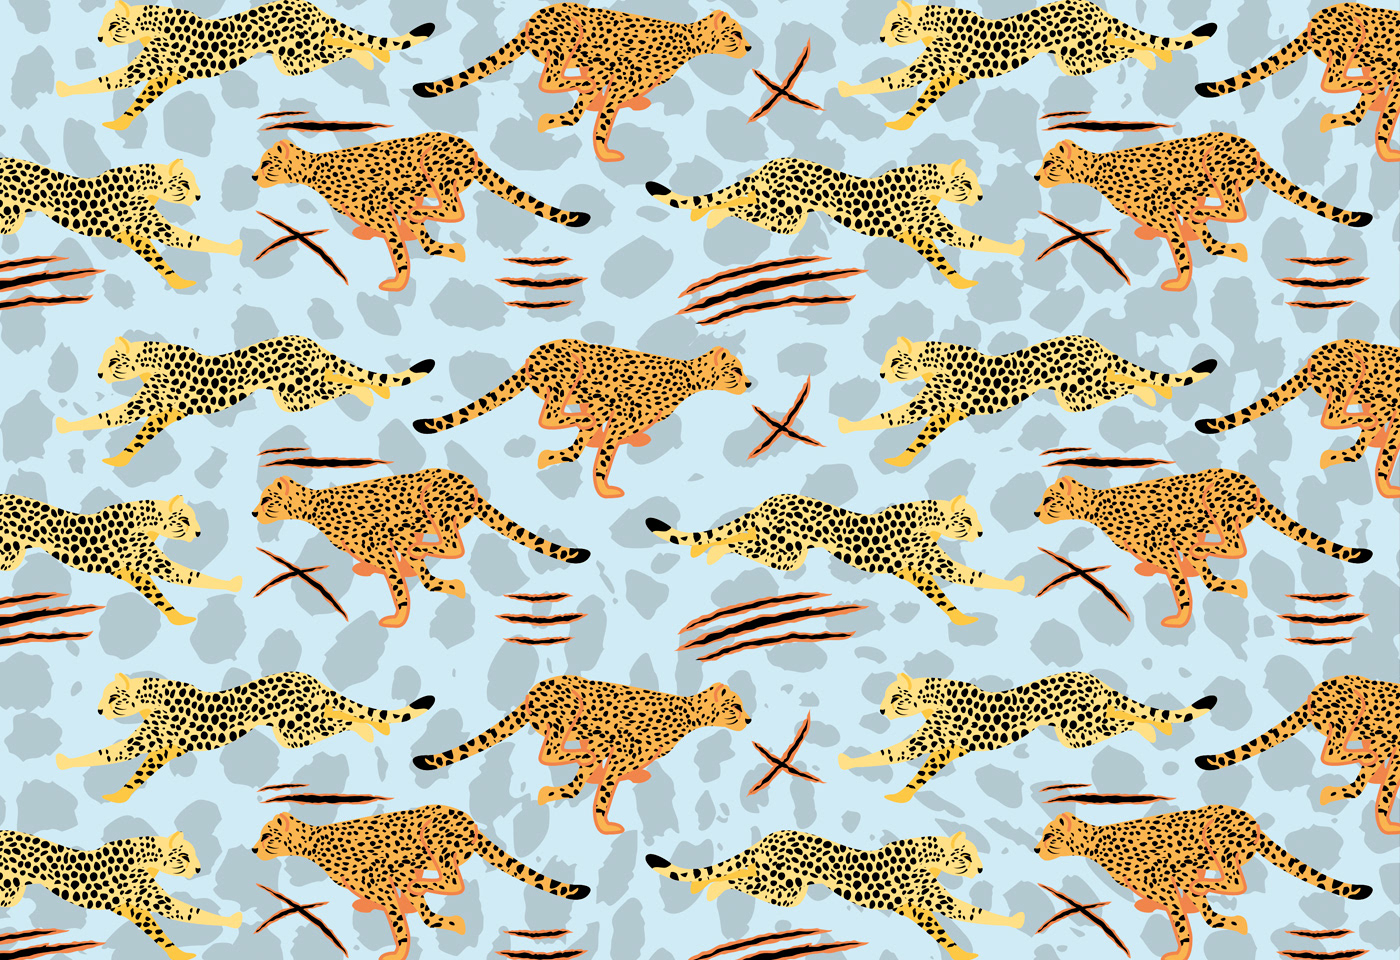 Leopards pattern design  flip flops summer claws leopard pattern Leopard illustration leopard texture panther vector